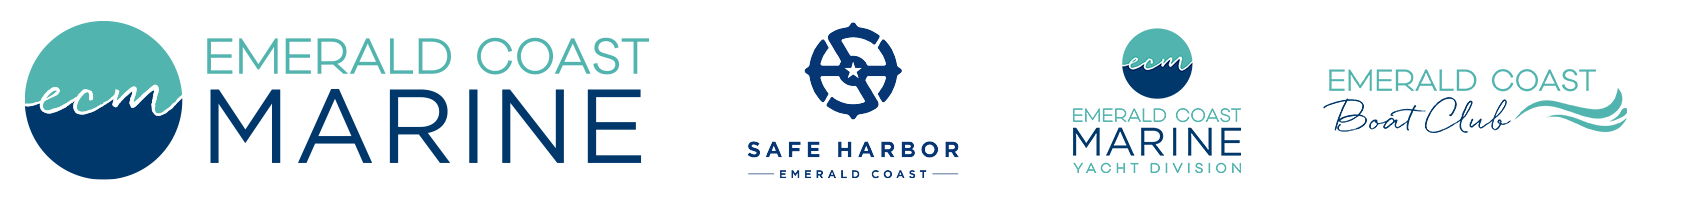 emeraldcoastmarine.com logo